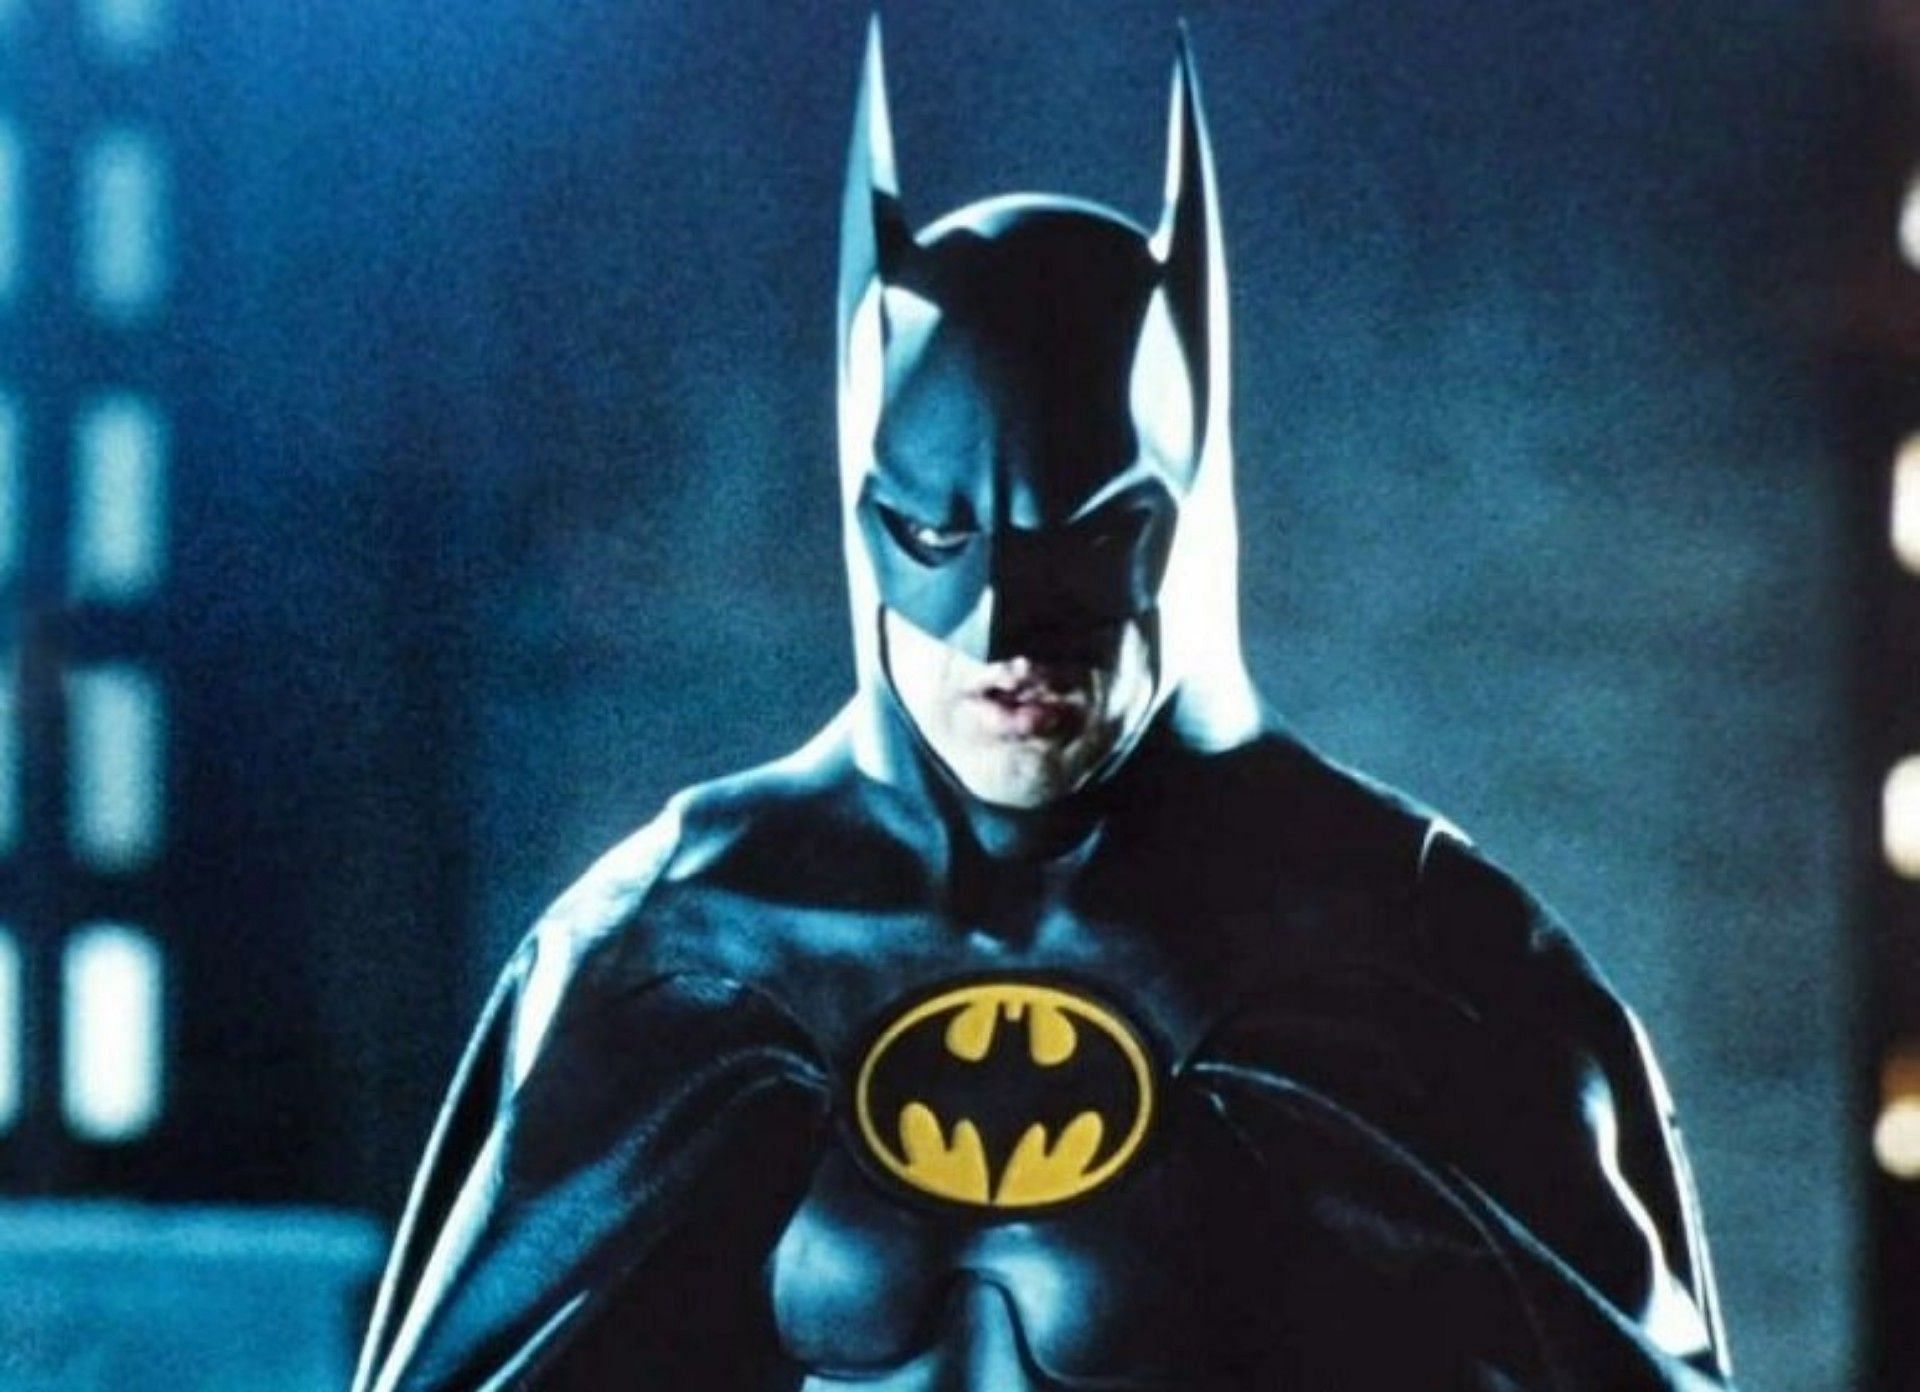 Michael Keaton as Batman (Image via Warner Bros Studios)